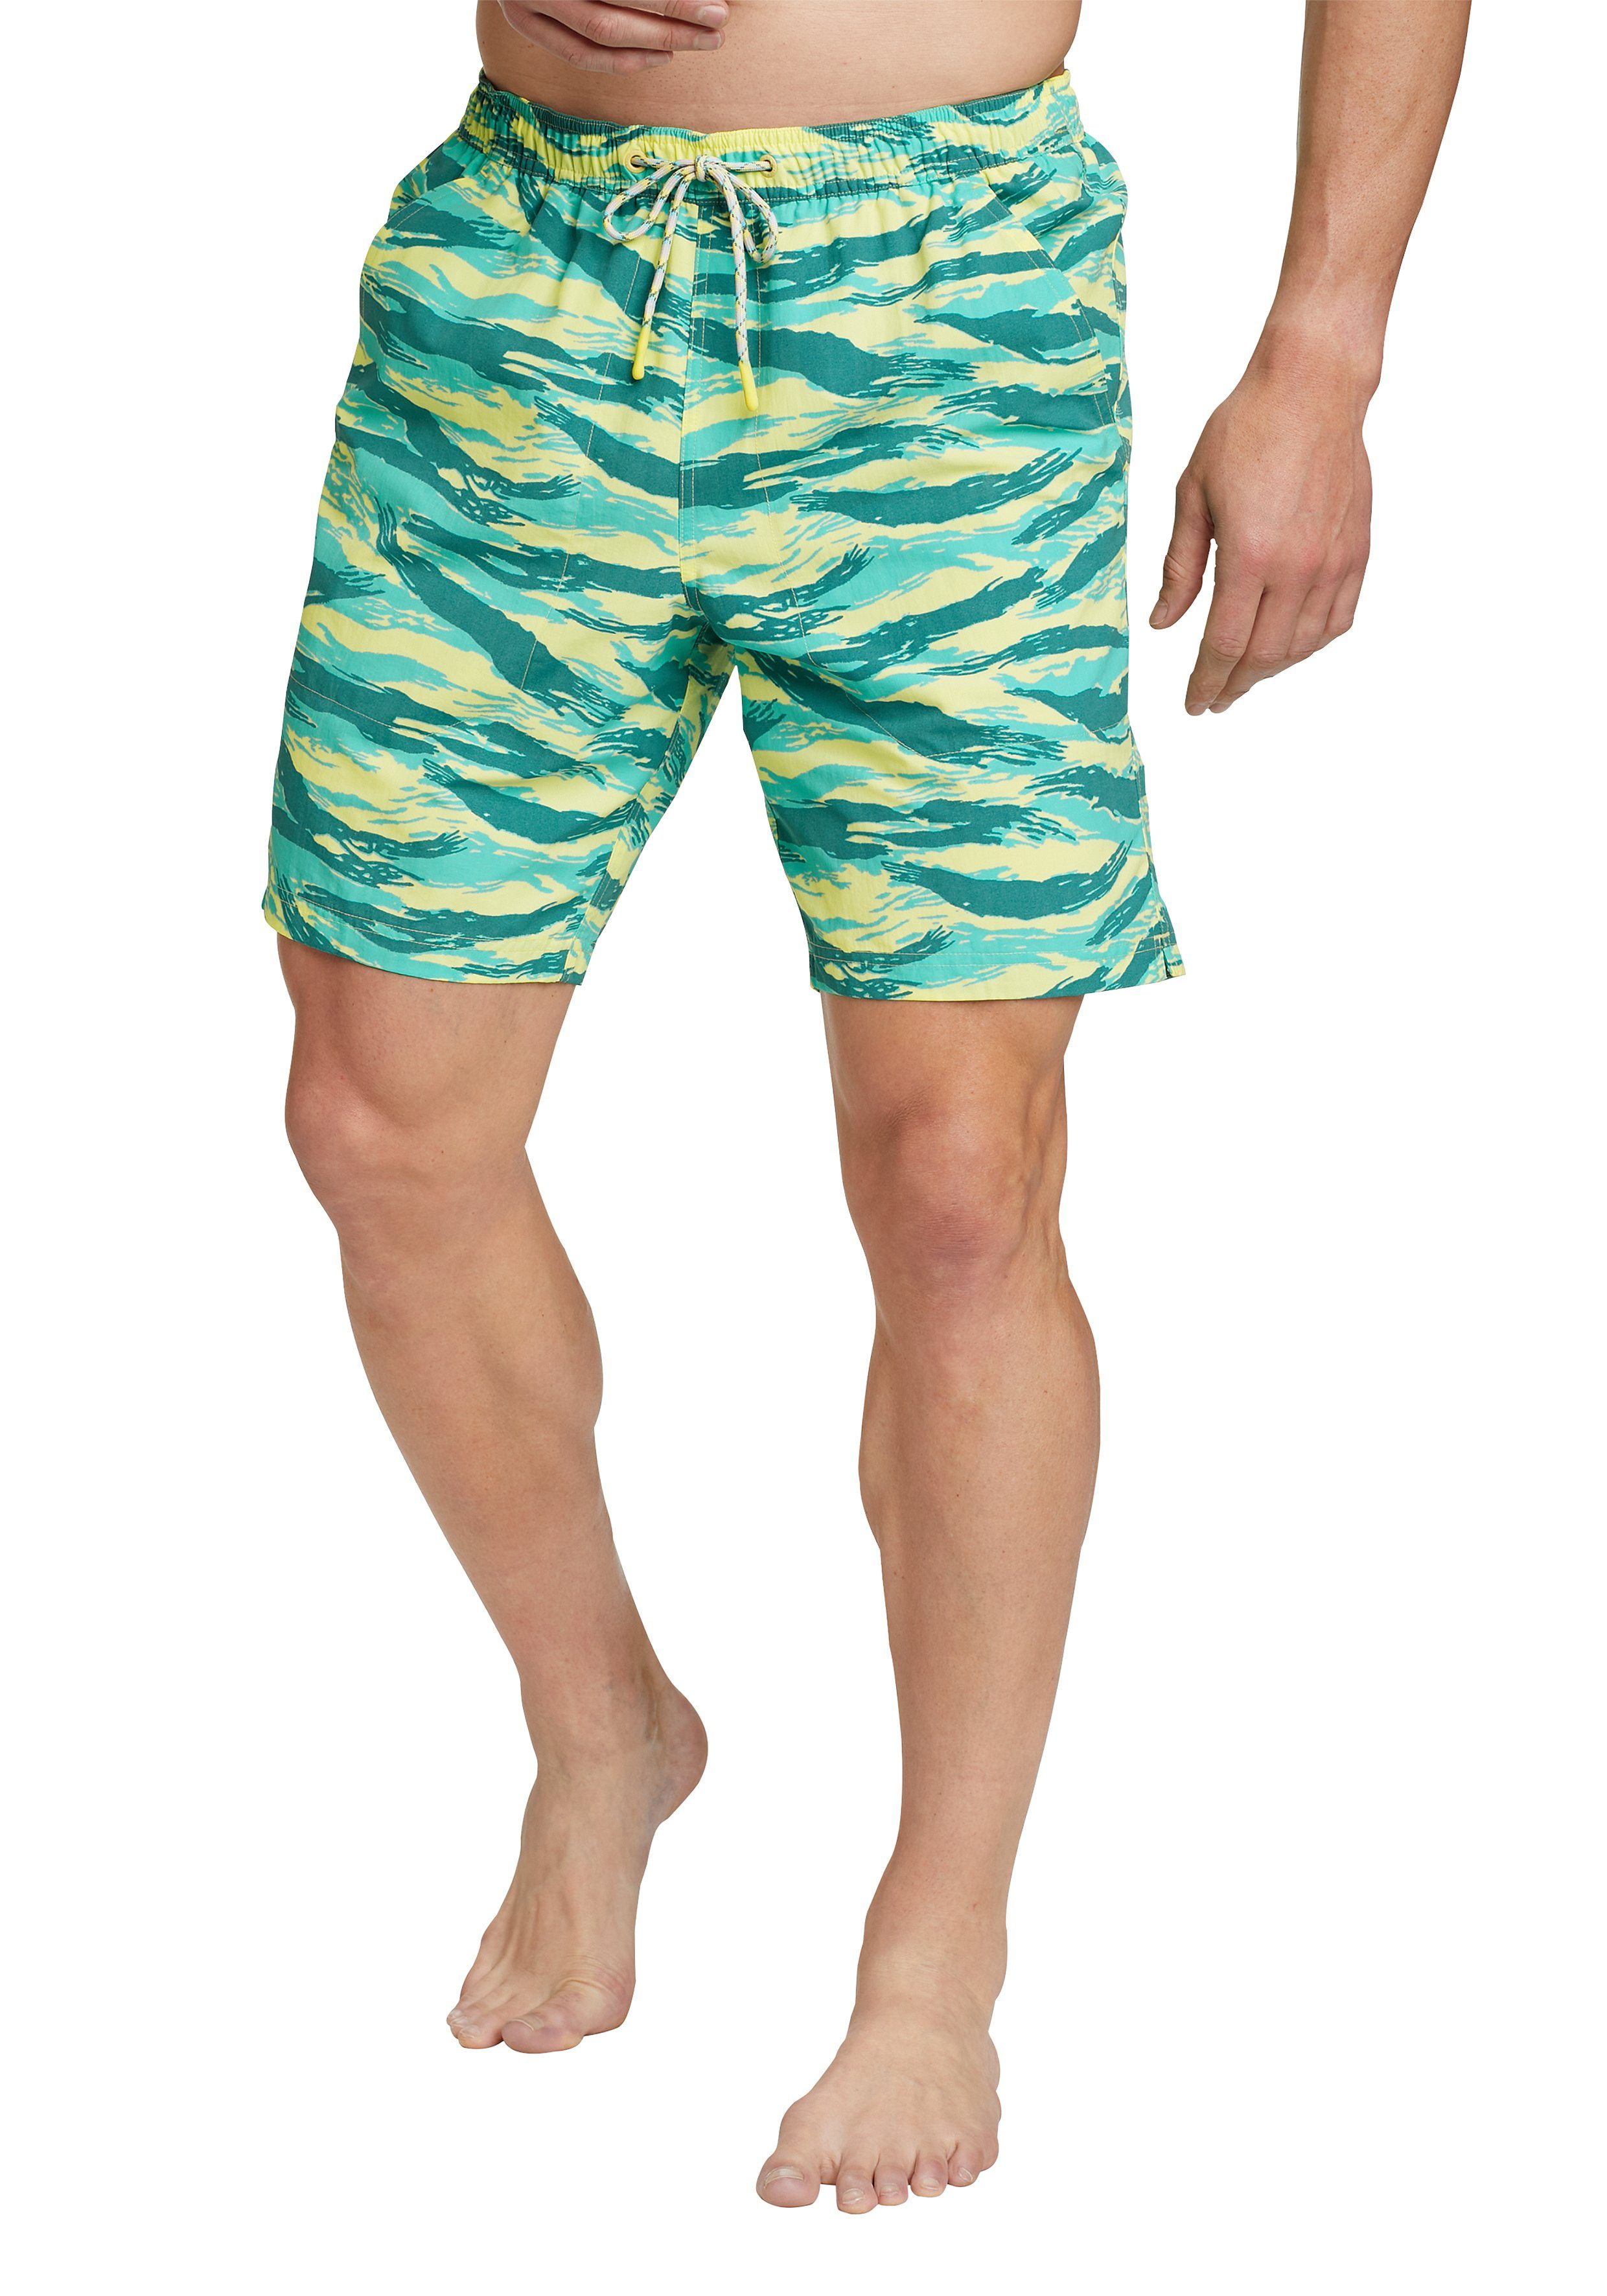 Eddie Bauer Shorts Tidal Shorts 2.0 - bedruckt Lagune